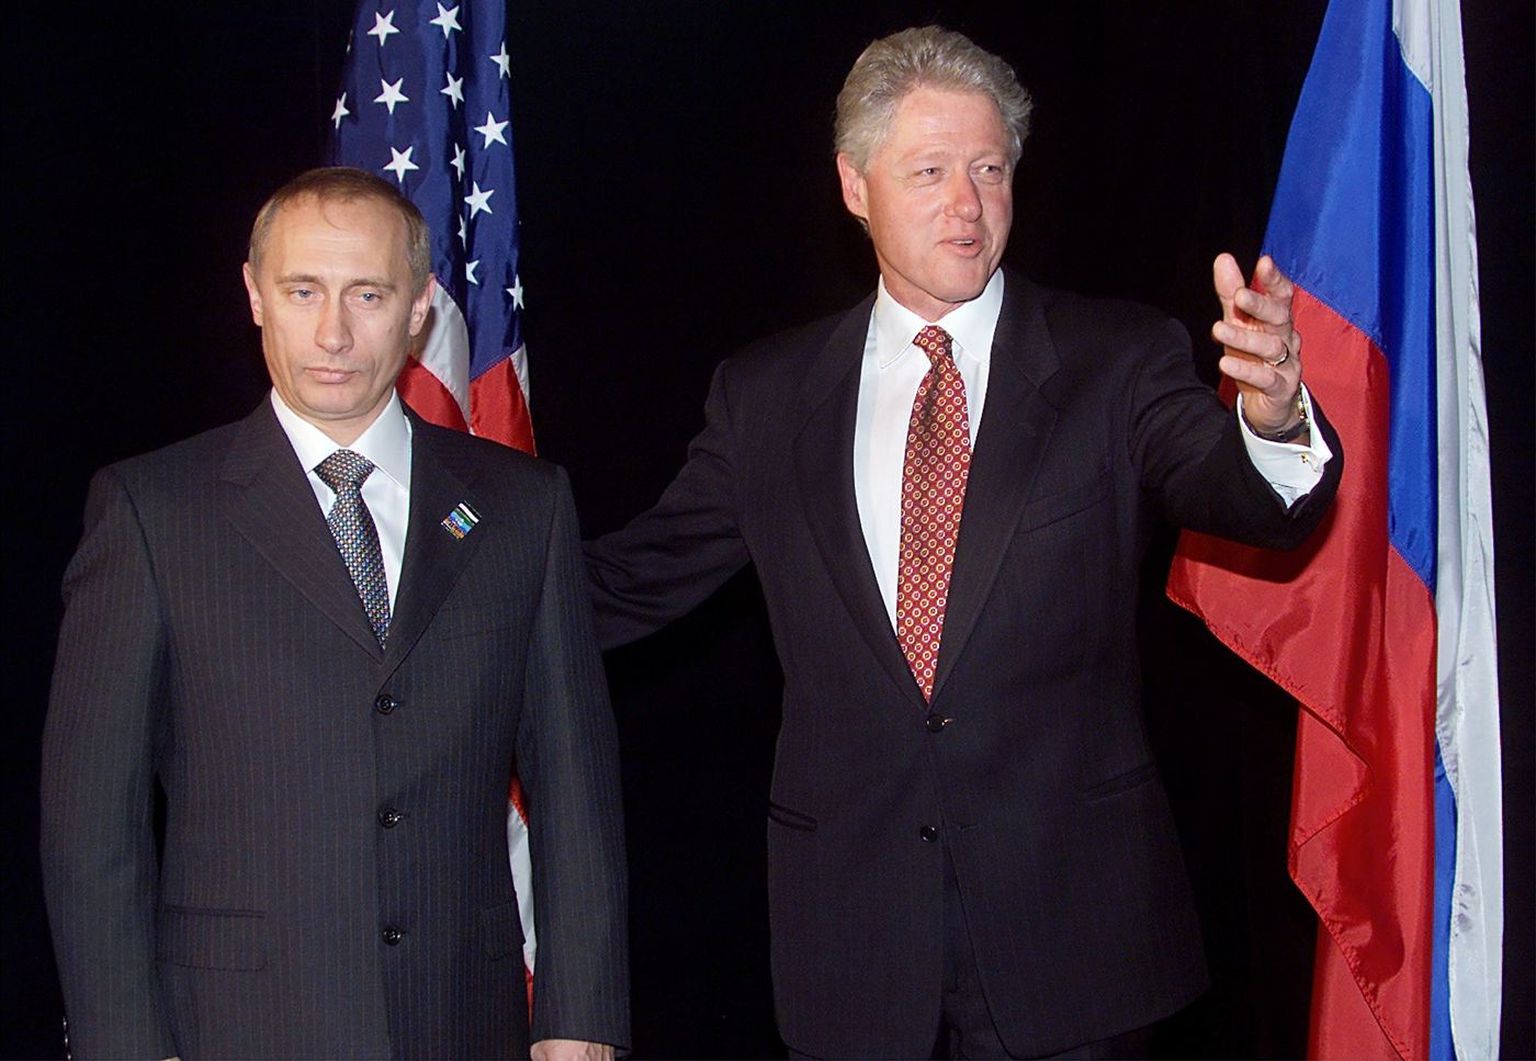 AASTA ON 2000: Suvel külastas toonane Ameerika president Bill Clinton Venemaad, mille etteotsa oli mõni kuu varem saanud Vladimir Putin. Kui imelik see ka pole, aga väidetavalt olevat kaks riigipead tõsimeeli arutanud Venemaa liitumist NATO-ga.